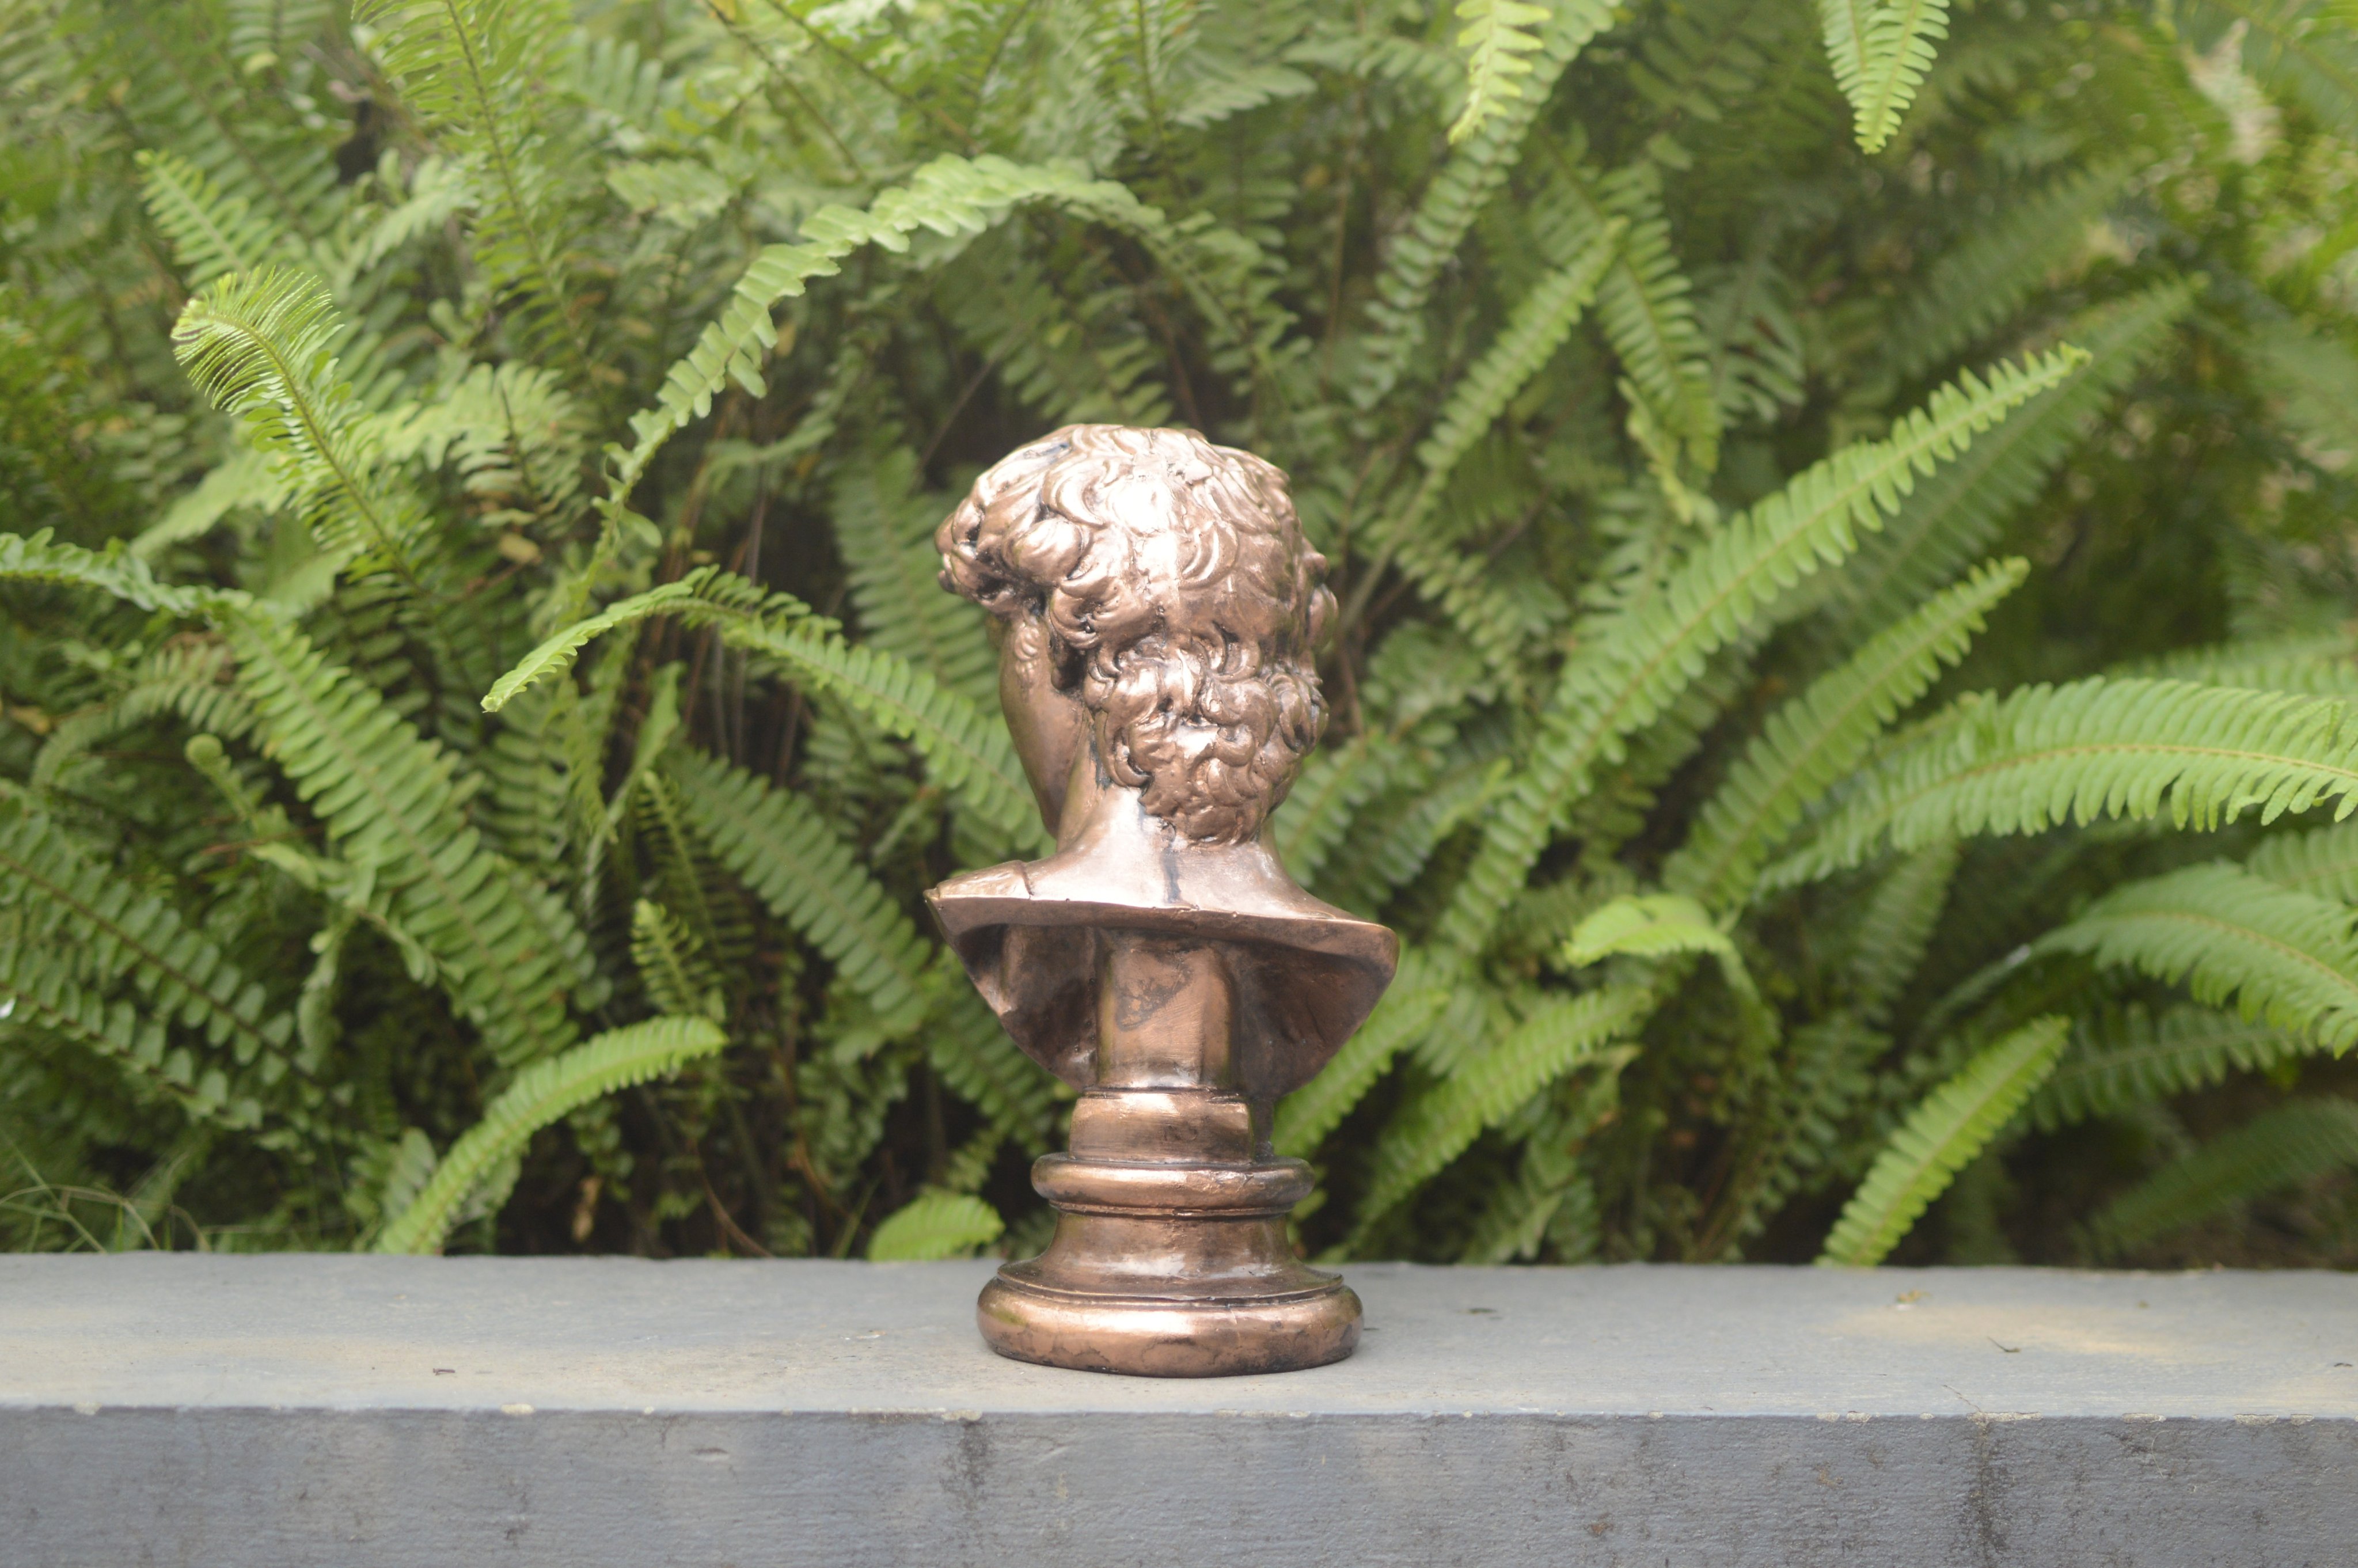 Đầu Tượng Chân Dung David Phong Cách Châu Âu - Hy Lạp - La Mã cổ đại cao 26 cm